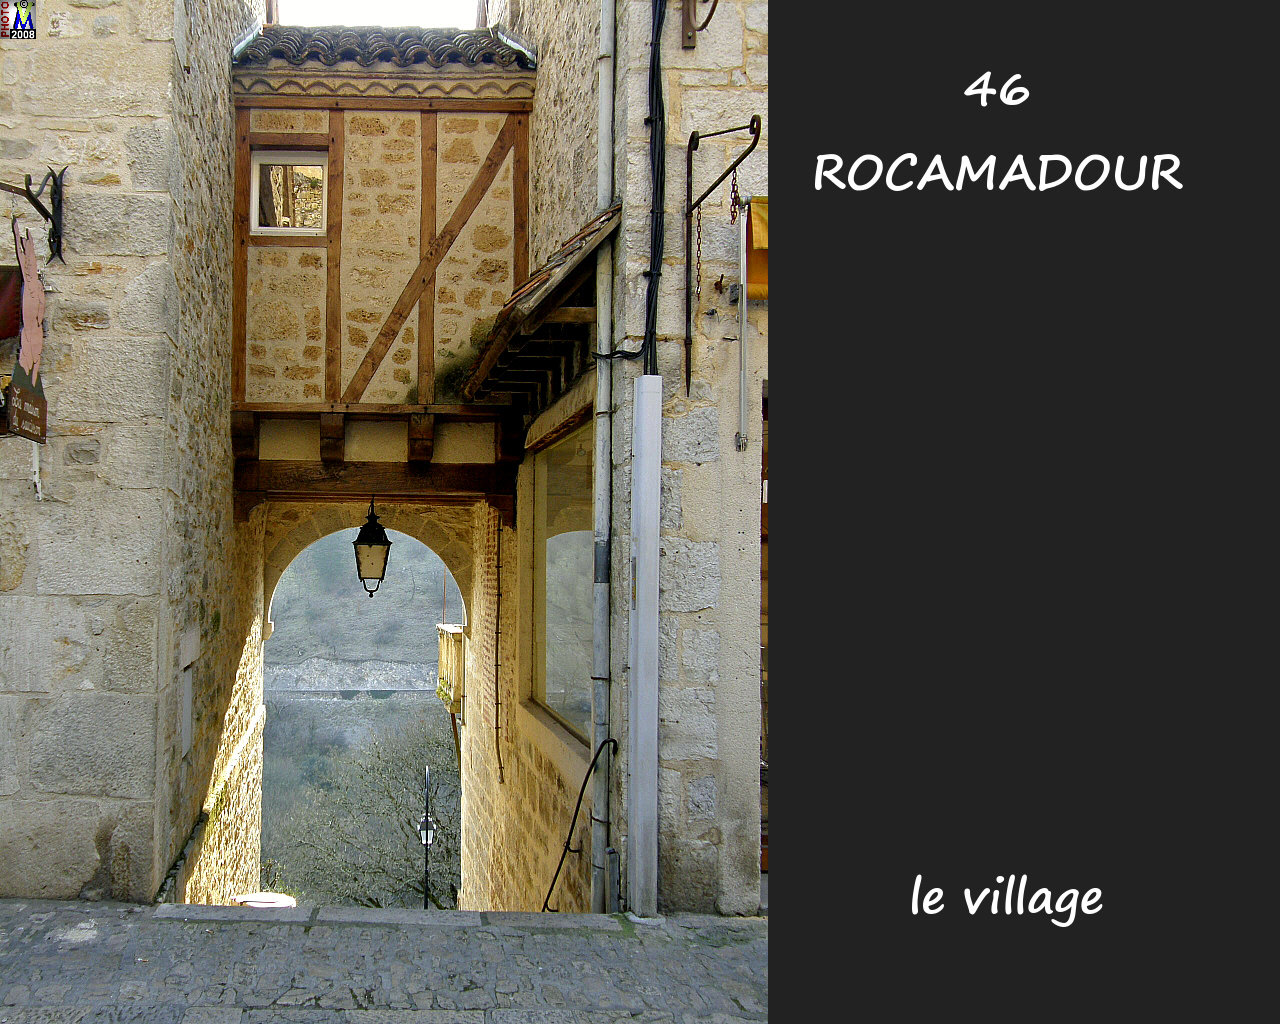 46ROCAMADOUR_village_108.jpg